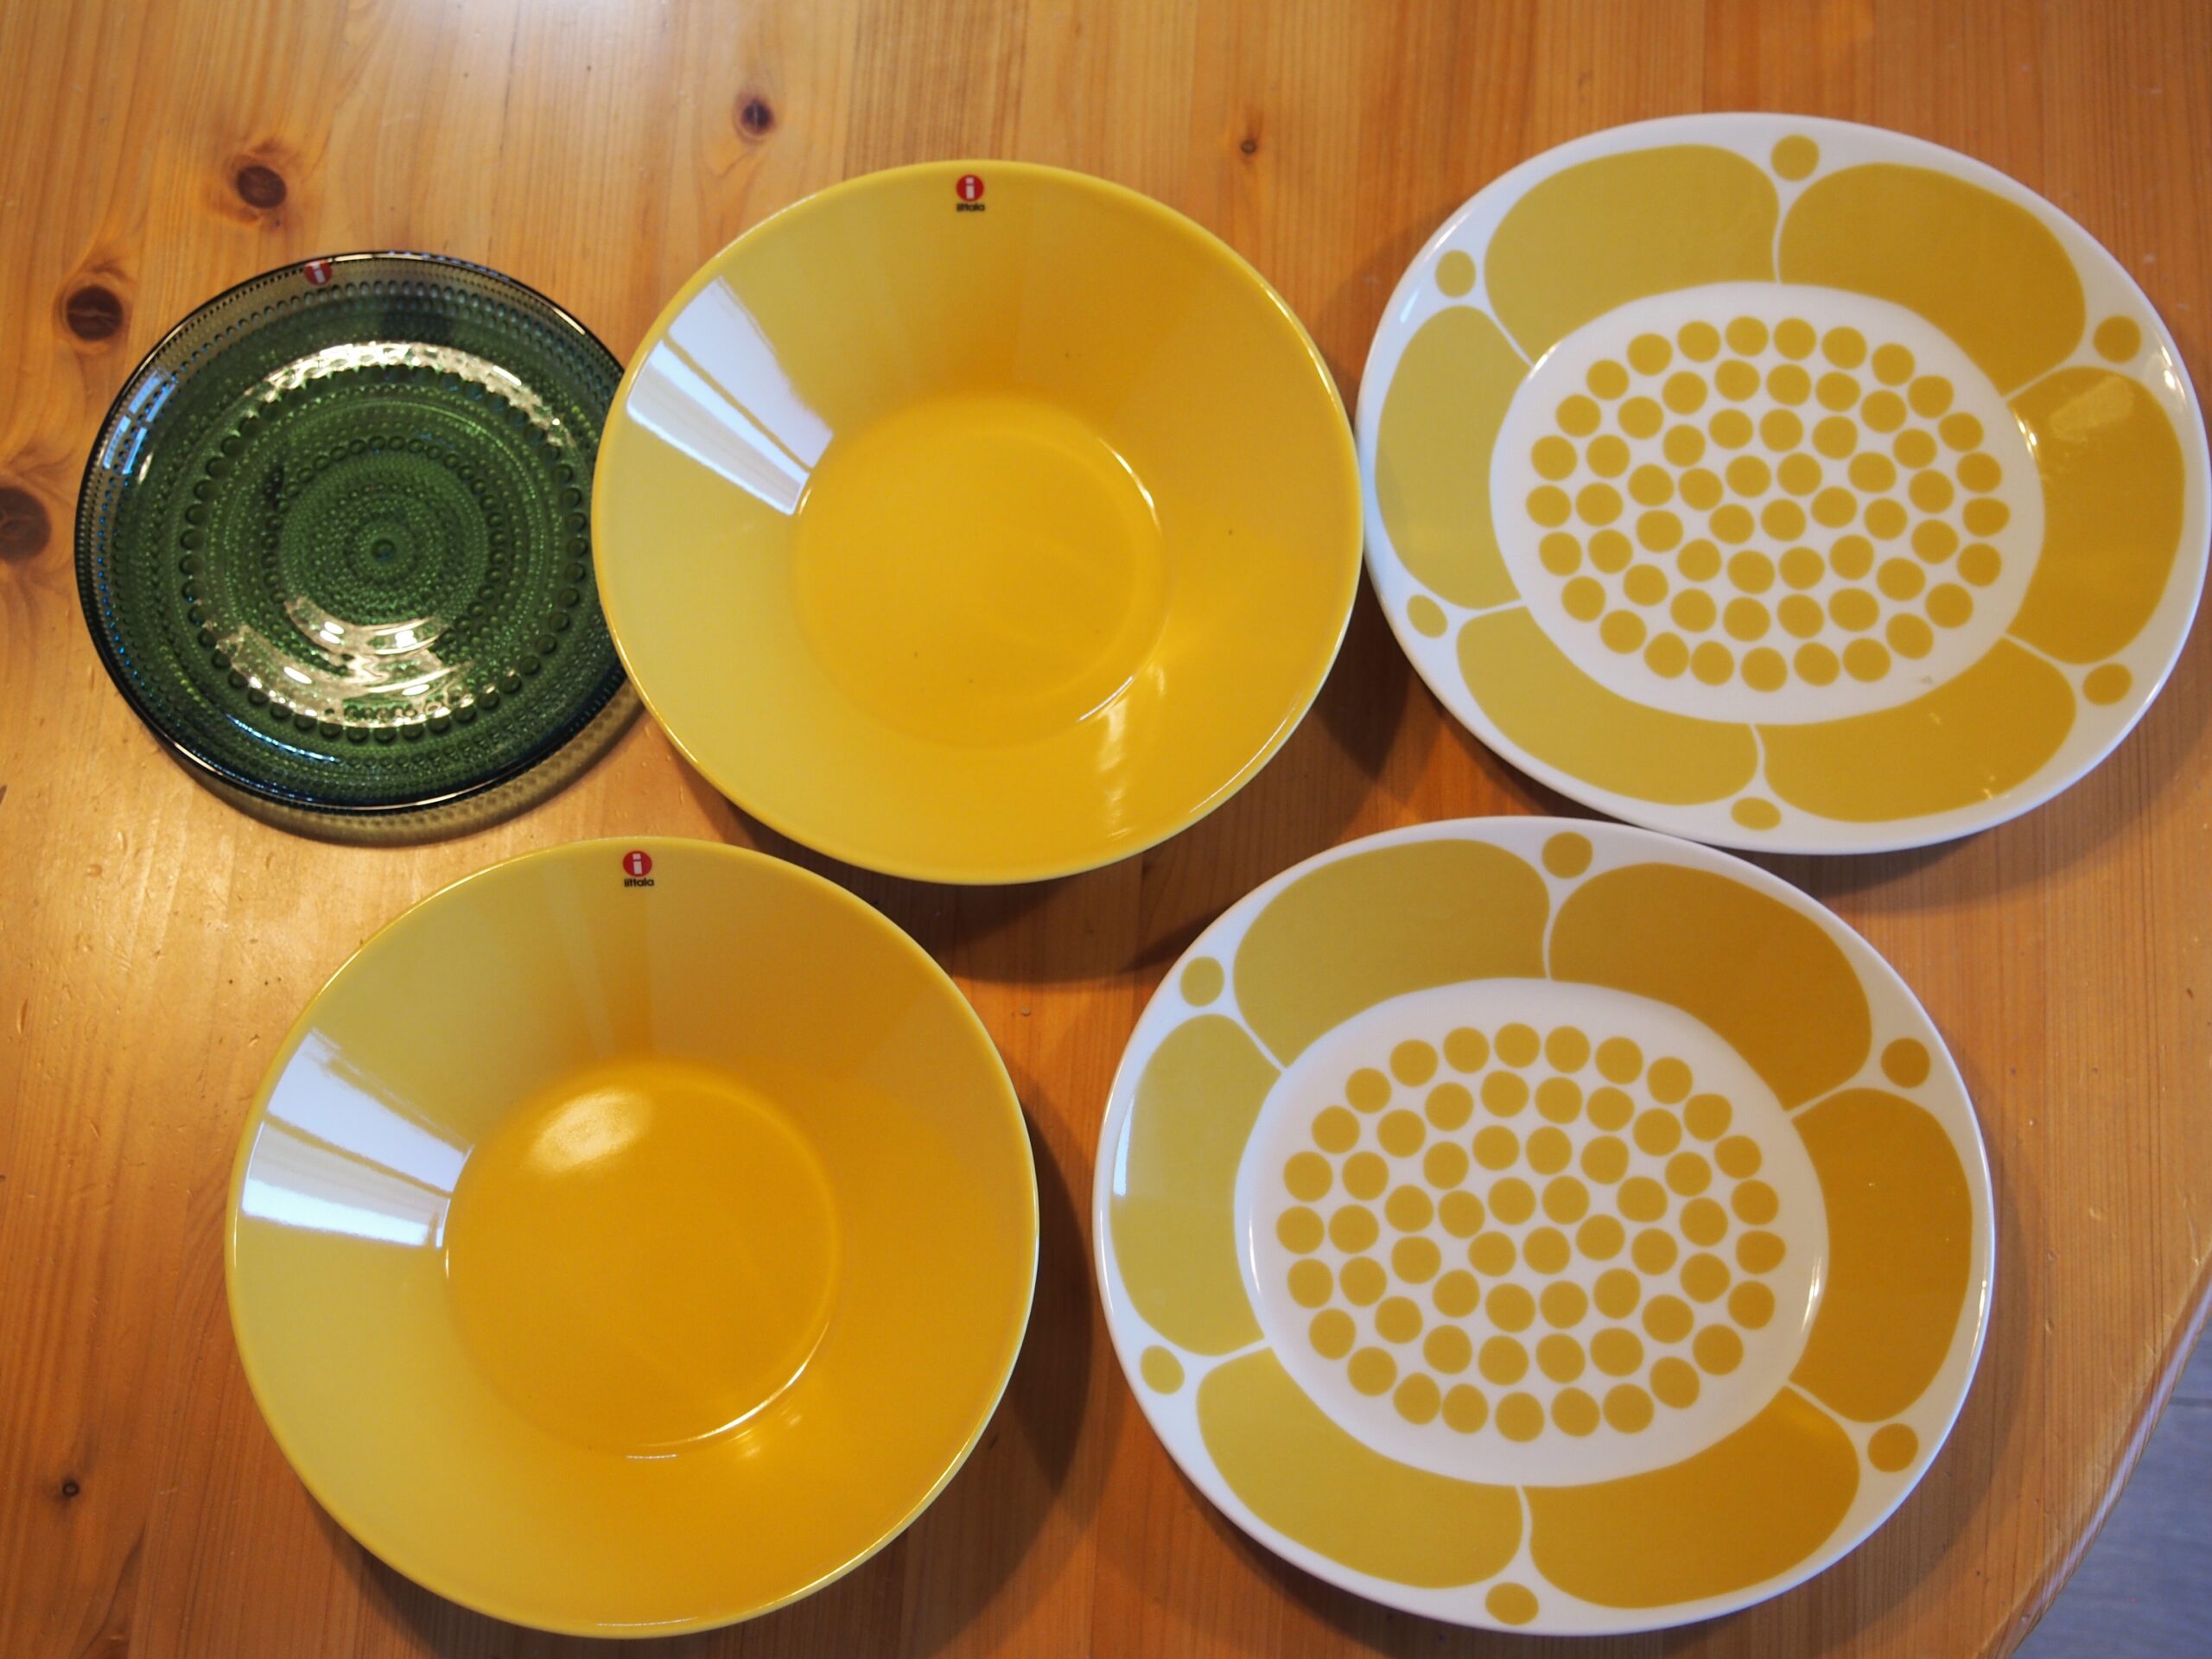 特価商品 ARABIA アラビア Paratiisi Yellow イエロー パラティッシ ボウル ディーププレート 17cm お皿 皿 食器 洋食器  ボール おしゃれ かわいい 北欧 磁器 円形